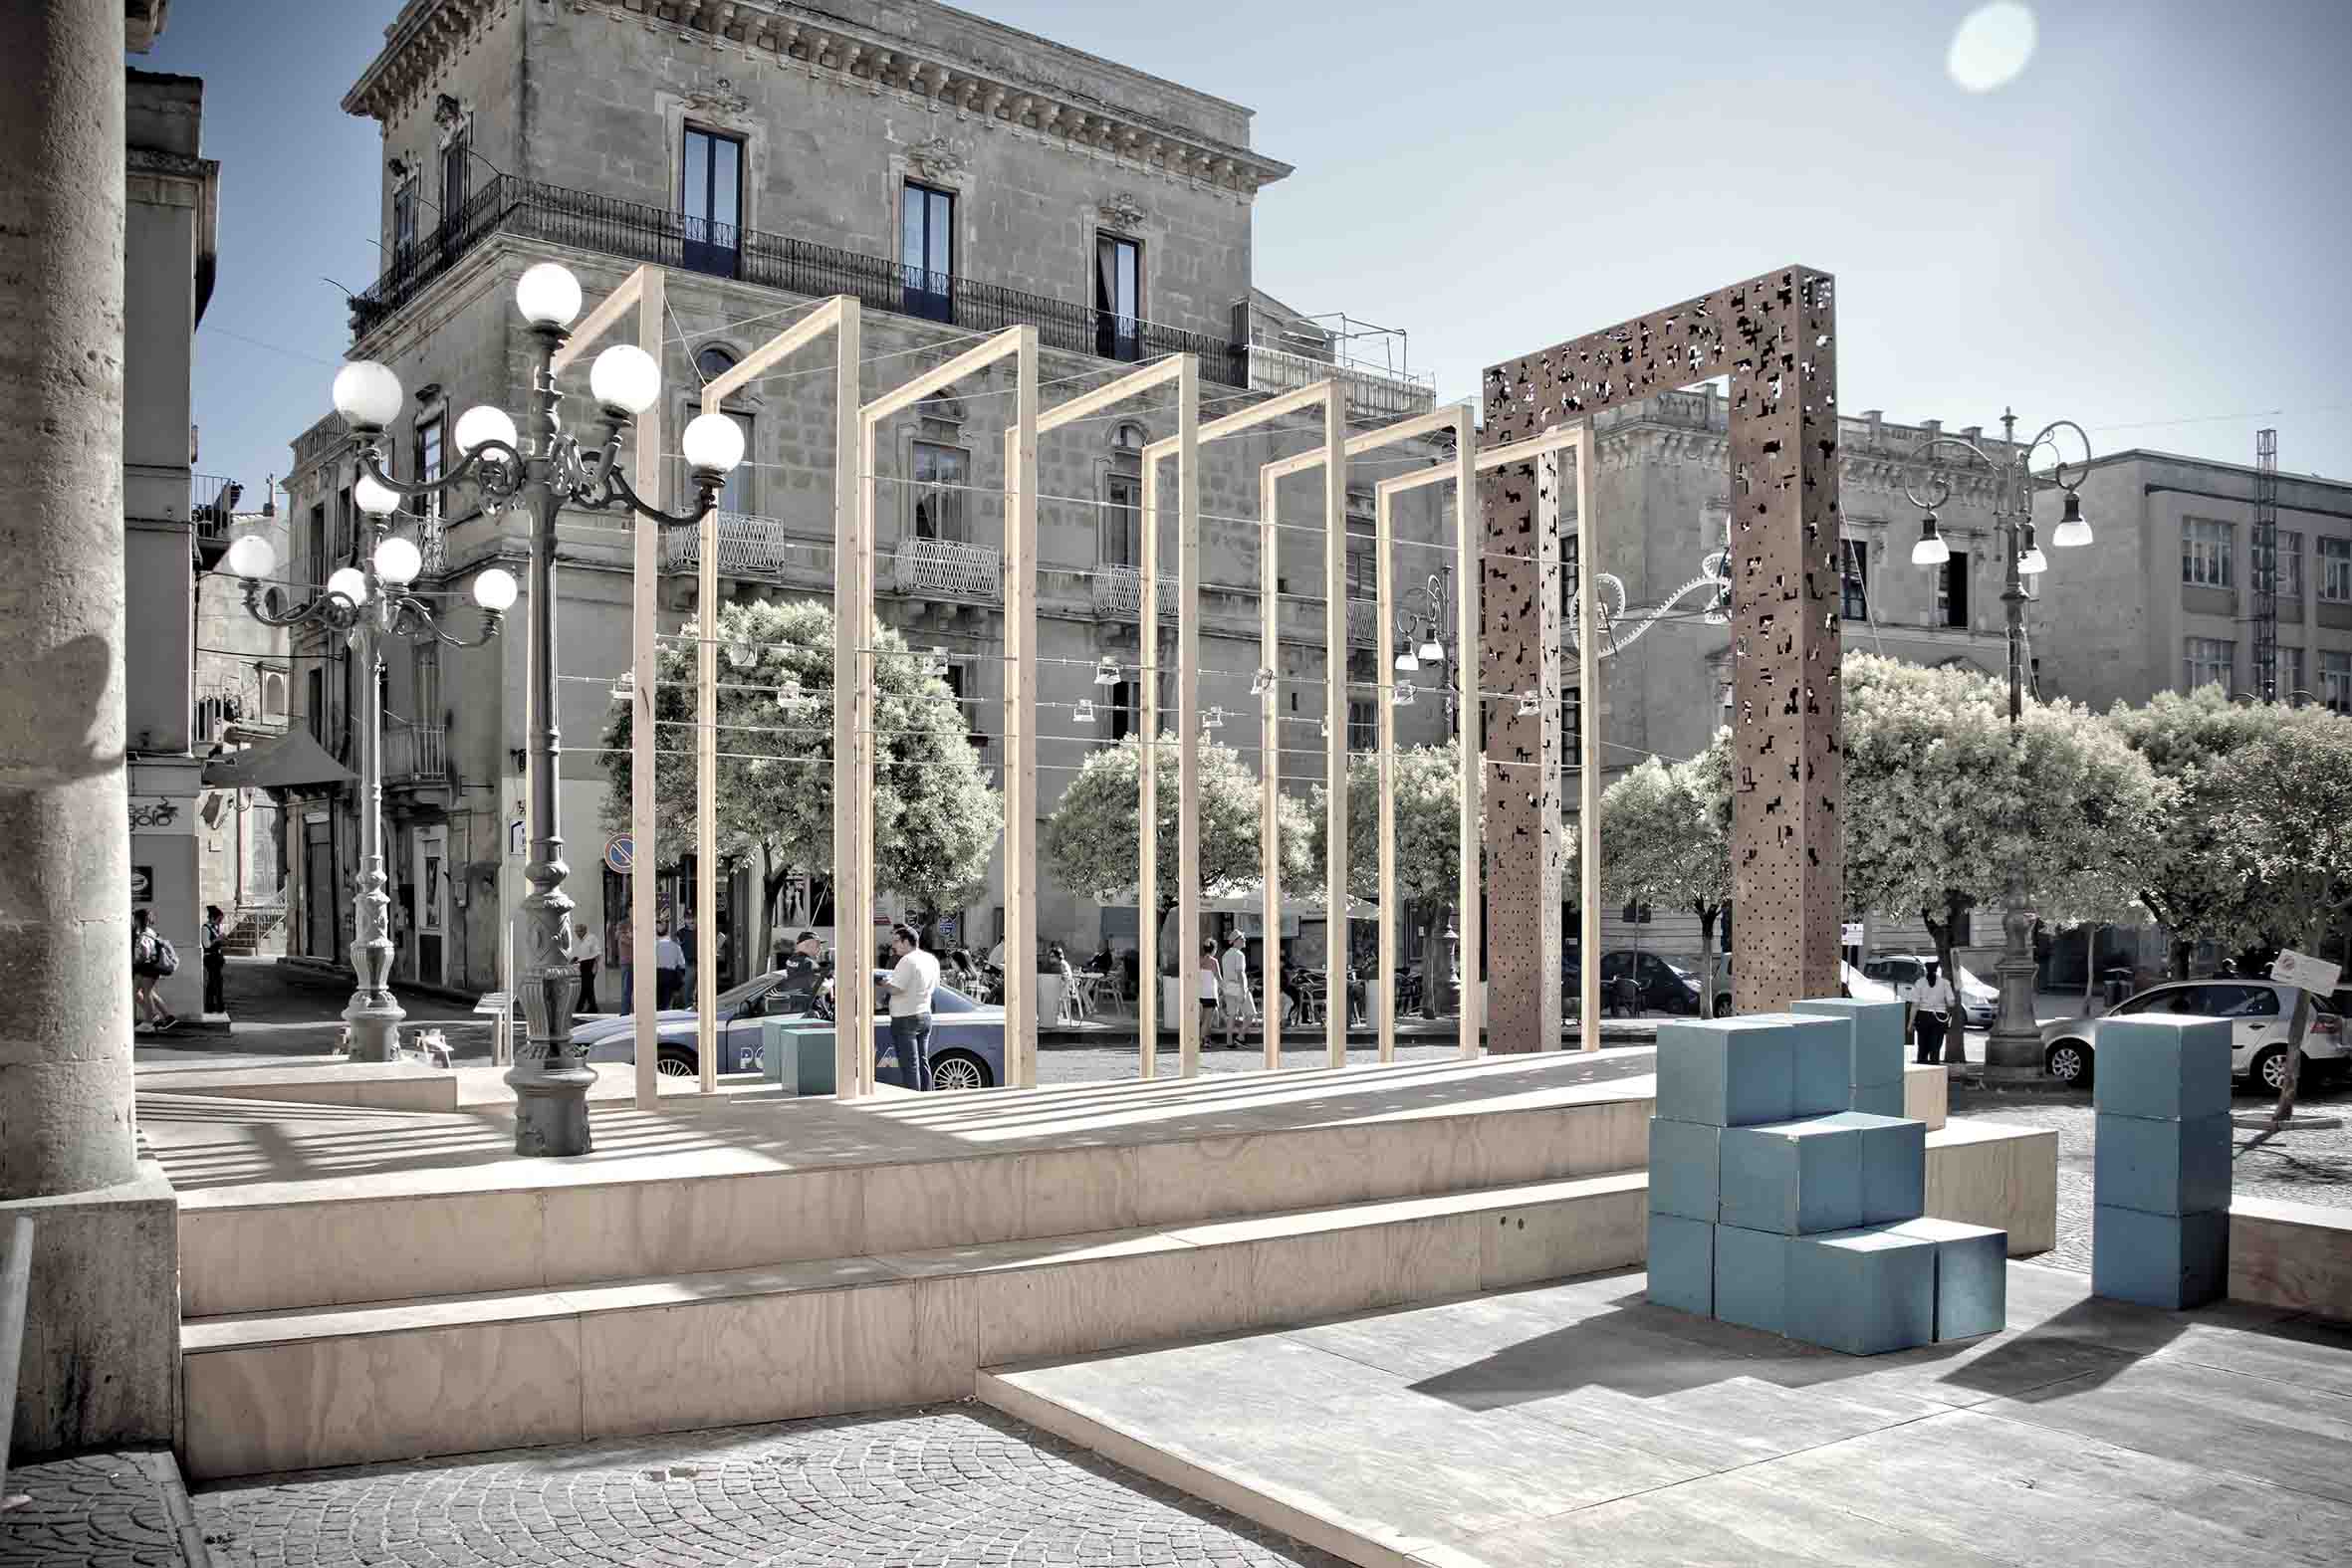 Sebastiano Fazzi Atelier di Architettura - #clusterONE | una porta per tutti